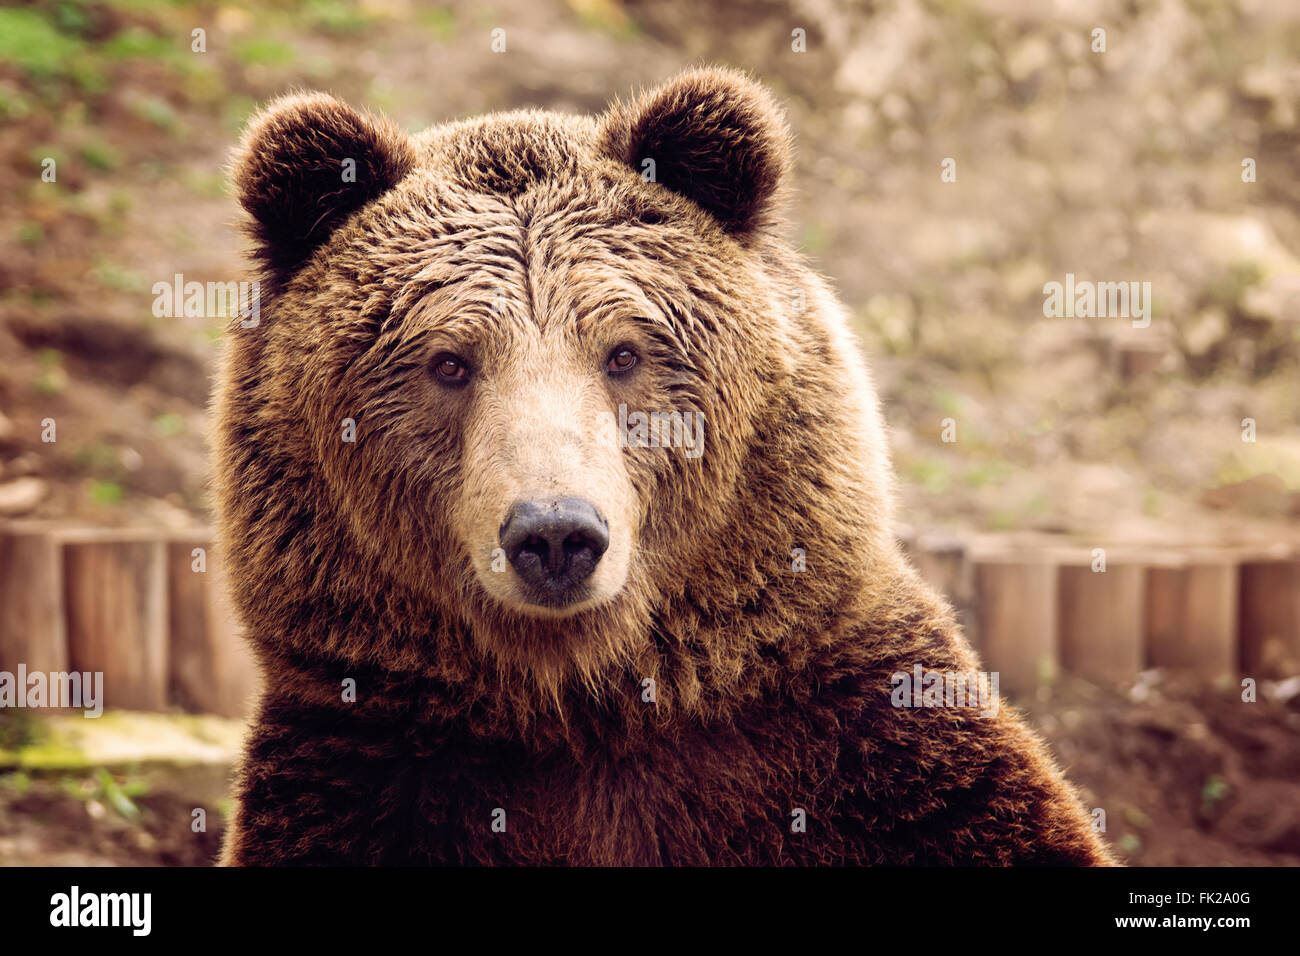 Vue de face de l'ours brun Banque D'Images